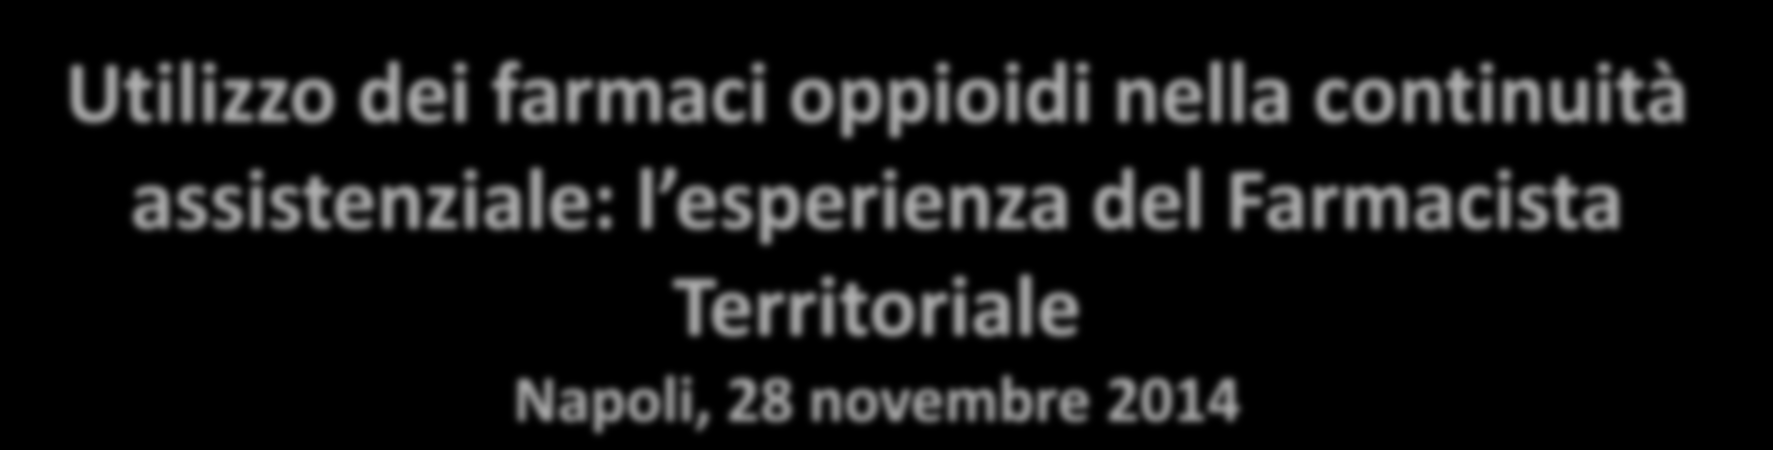 Territoriale Napoli, 28 novembre 2014 Dott.